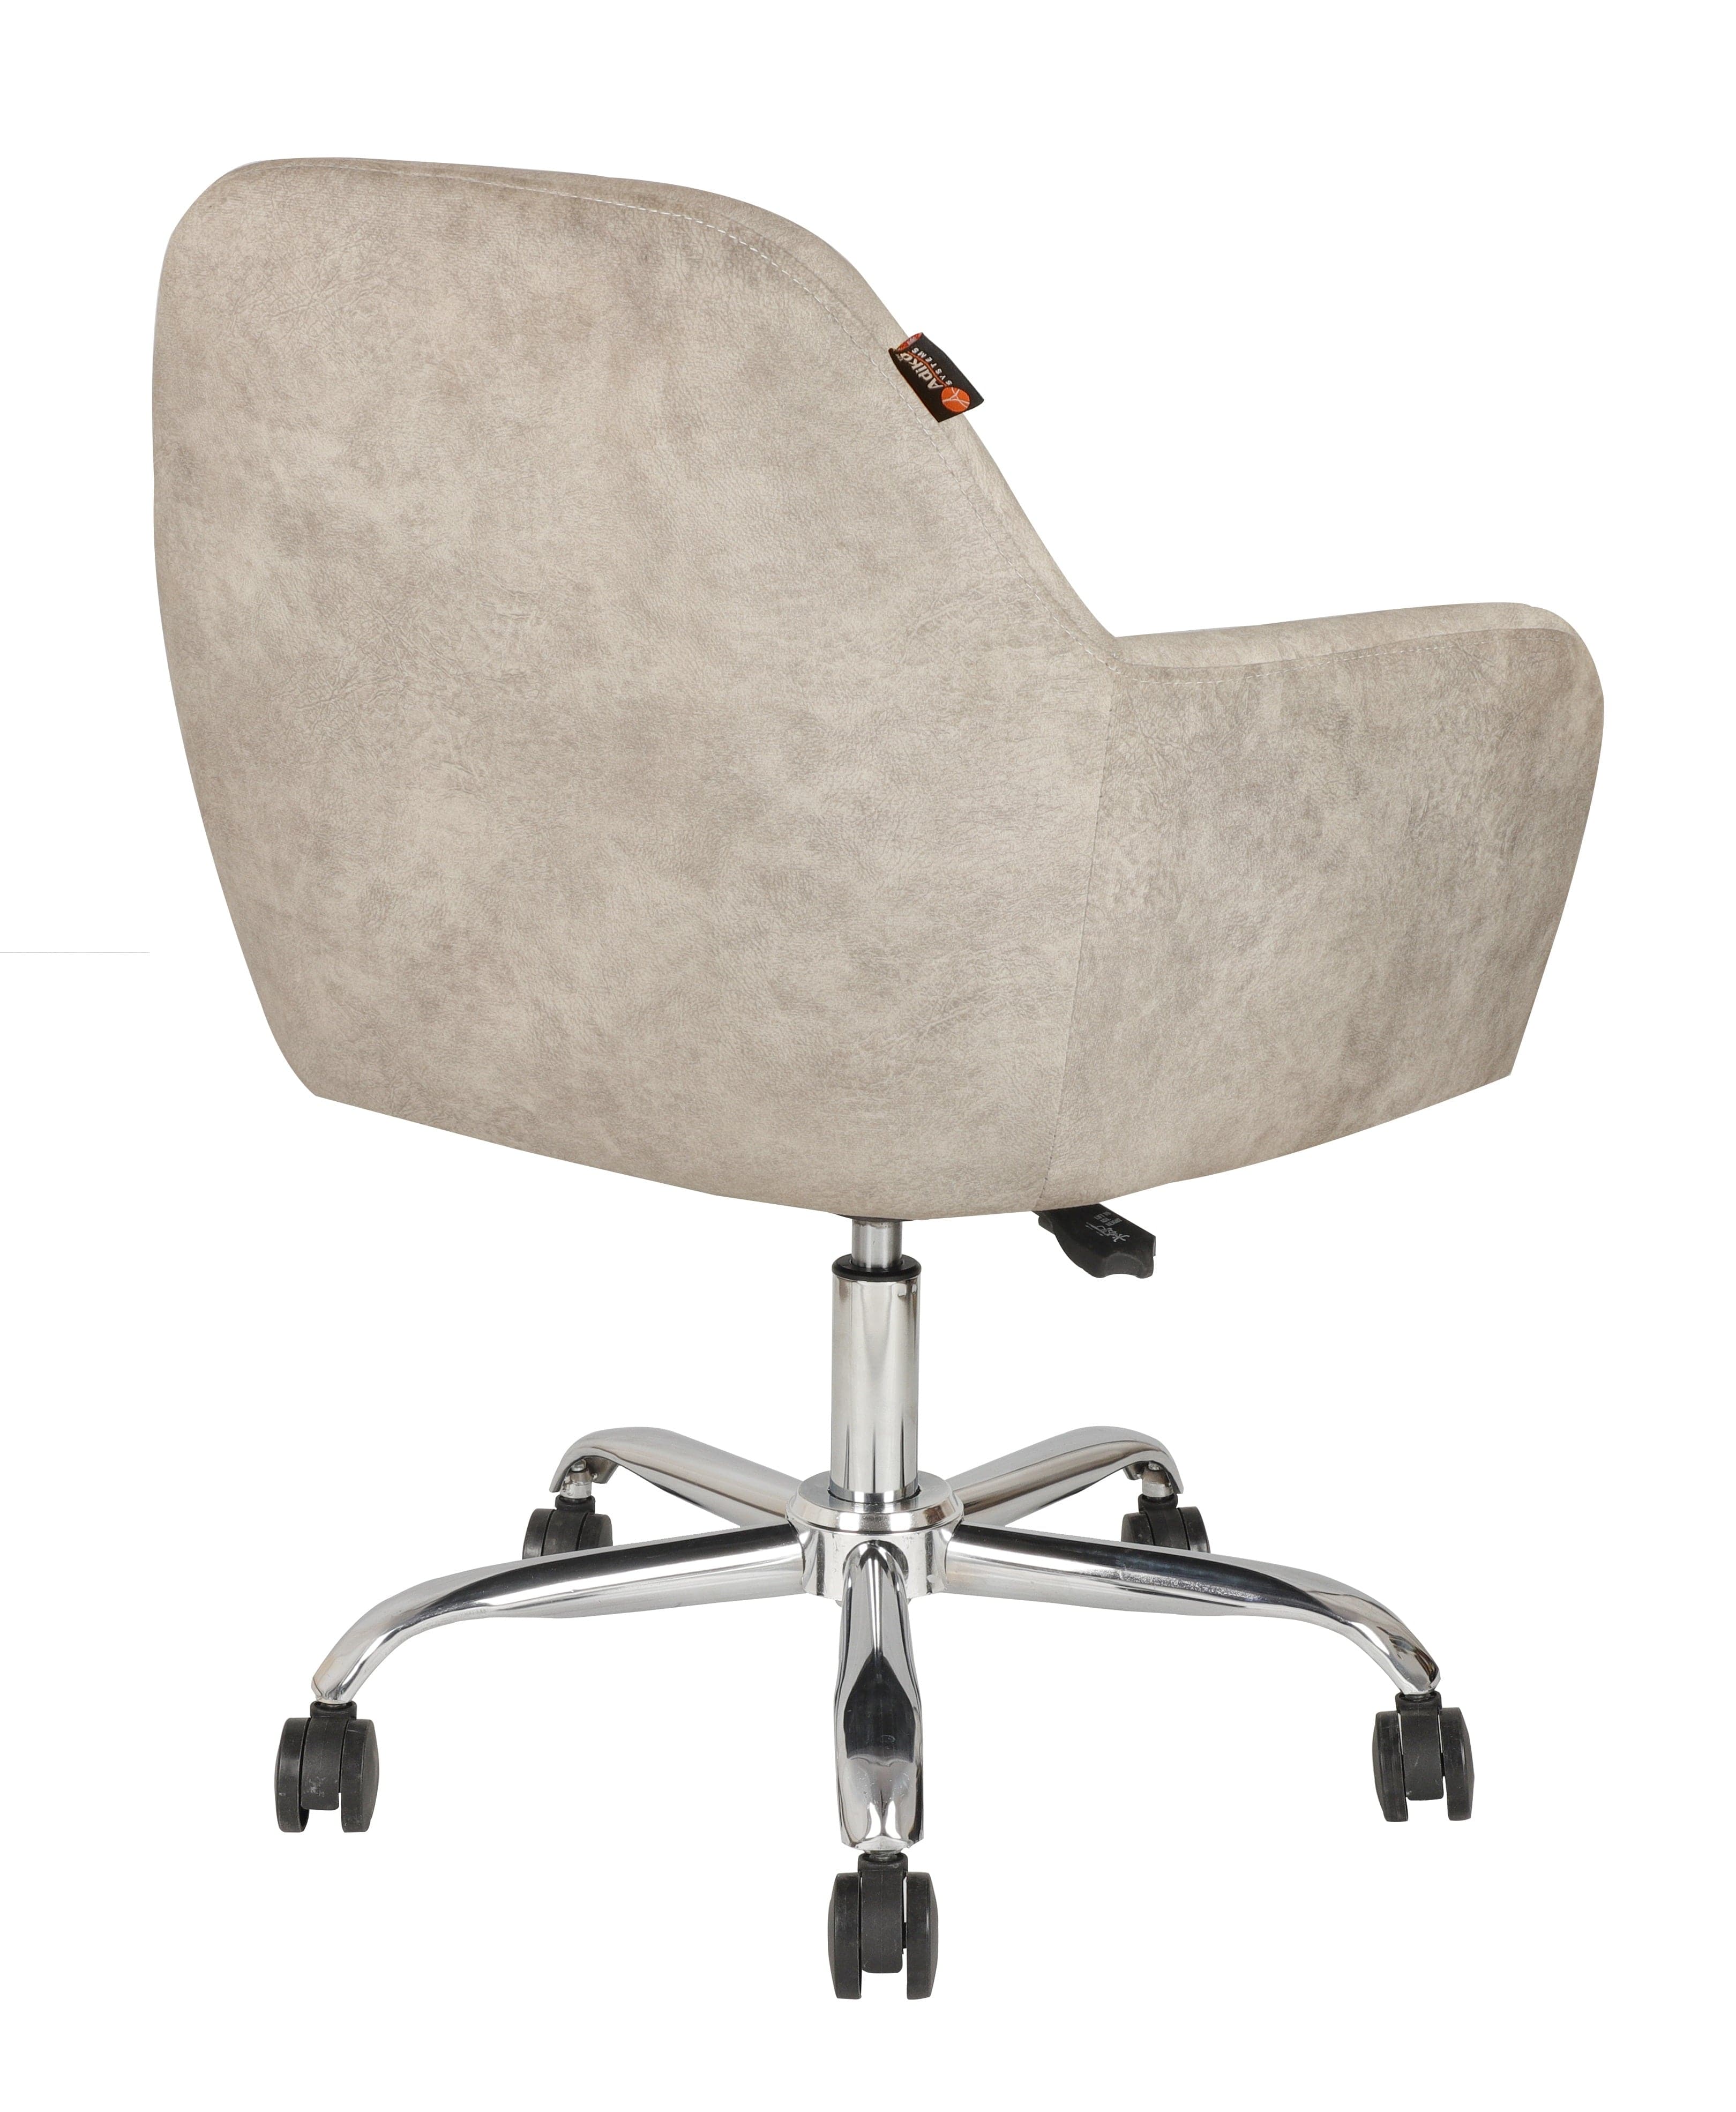 Adiko Lounge chair in Cream